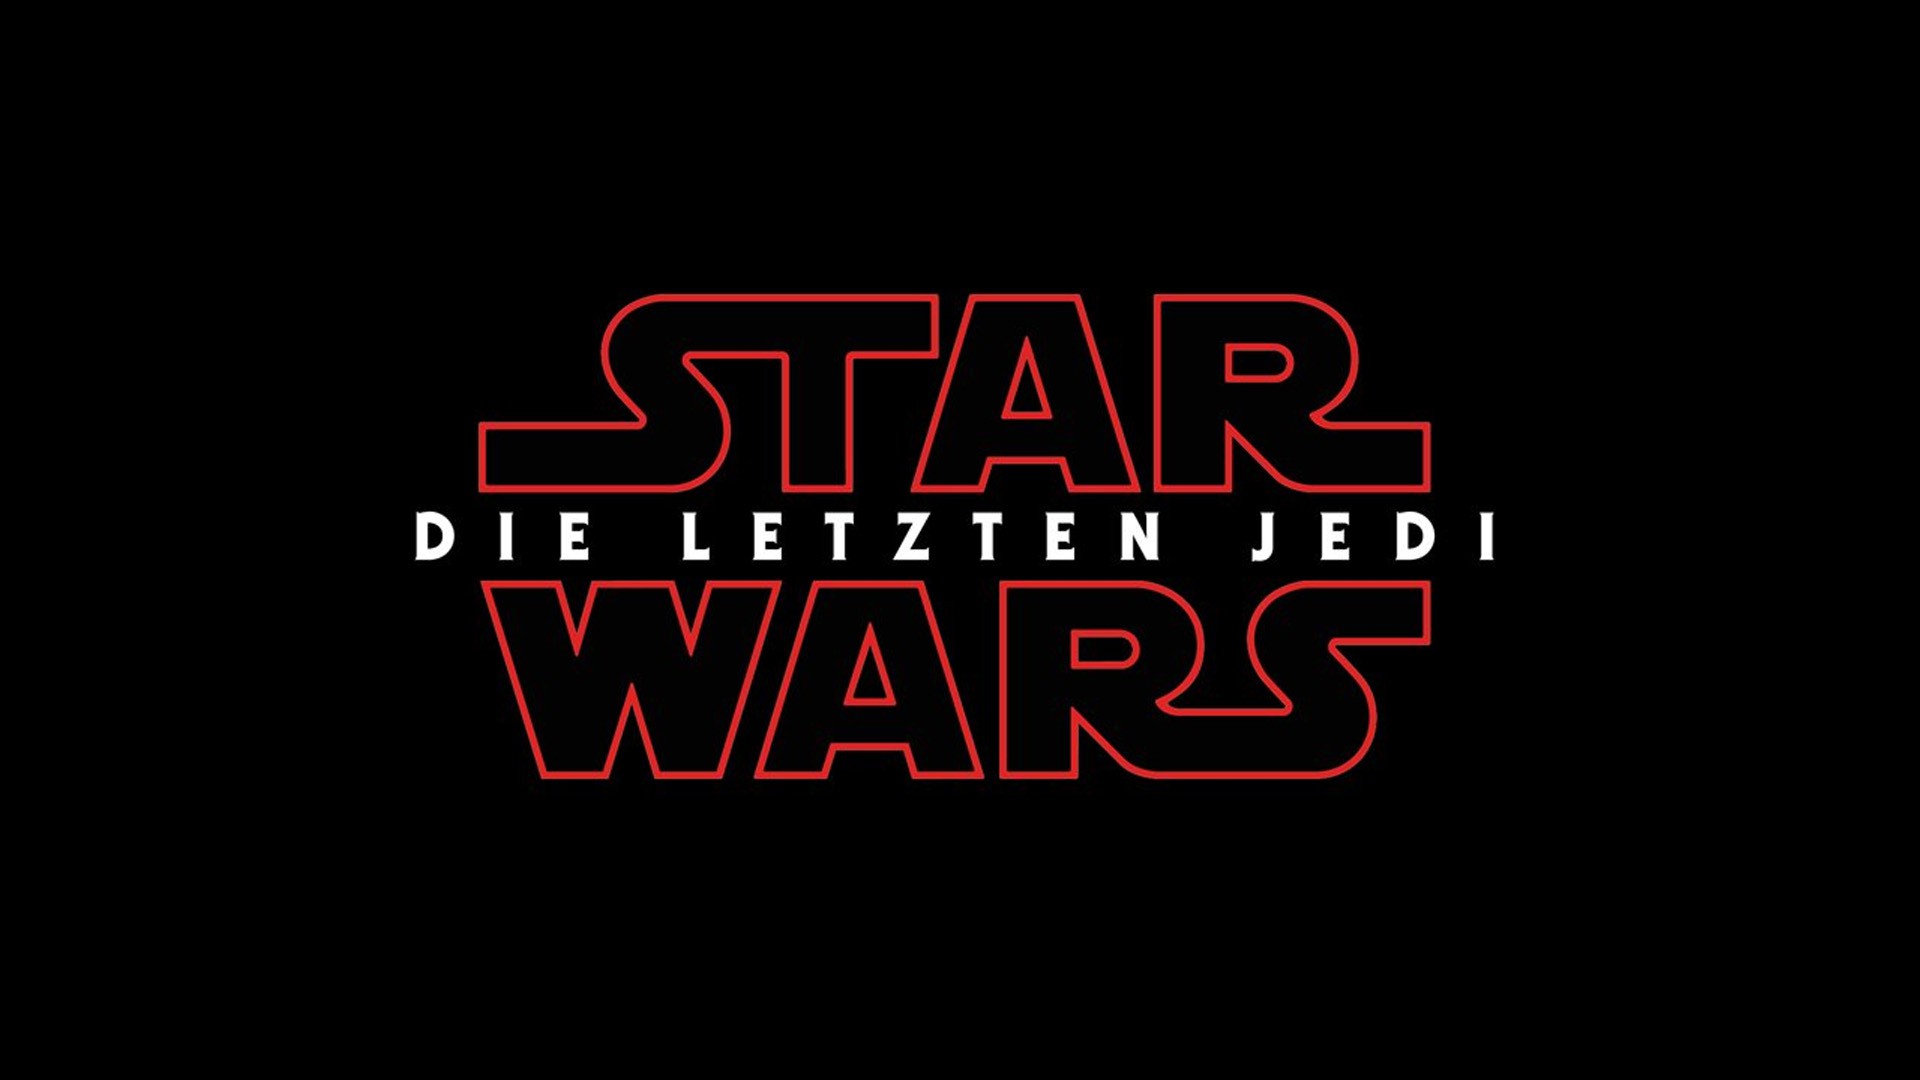 Star Wars Die letzten Jedi Teaser